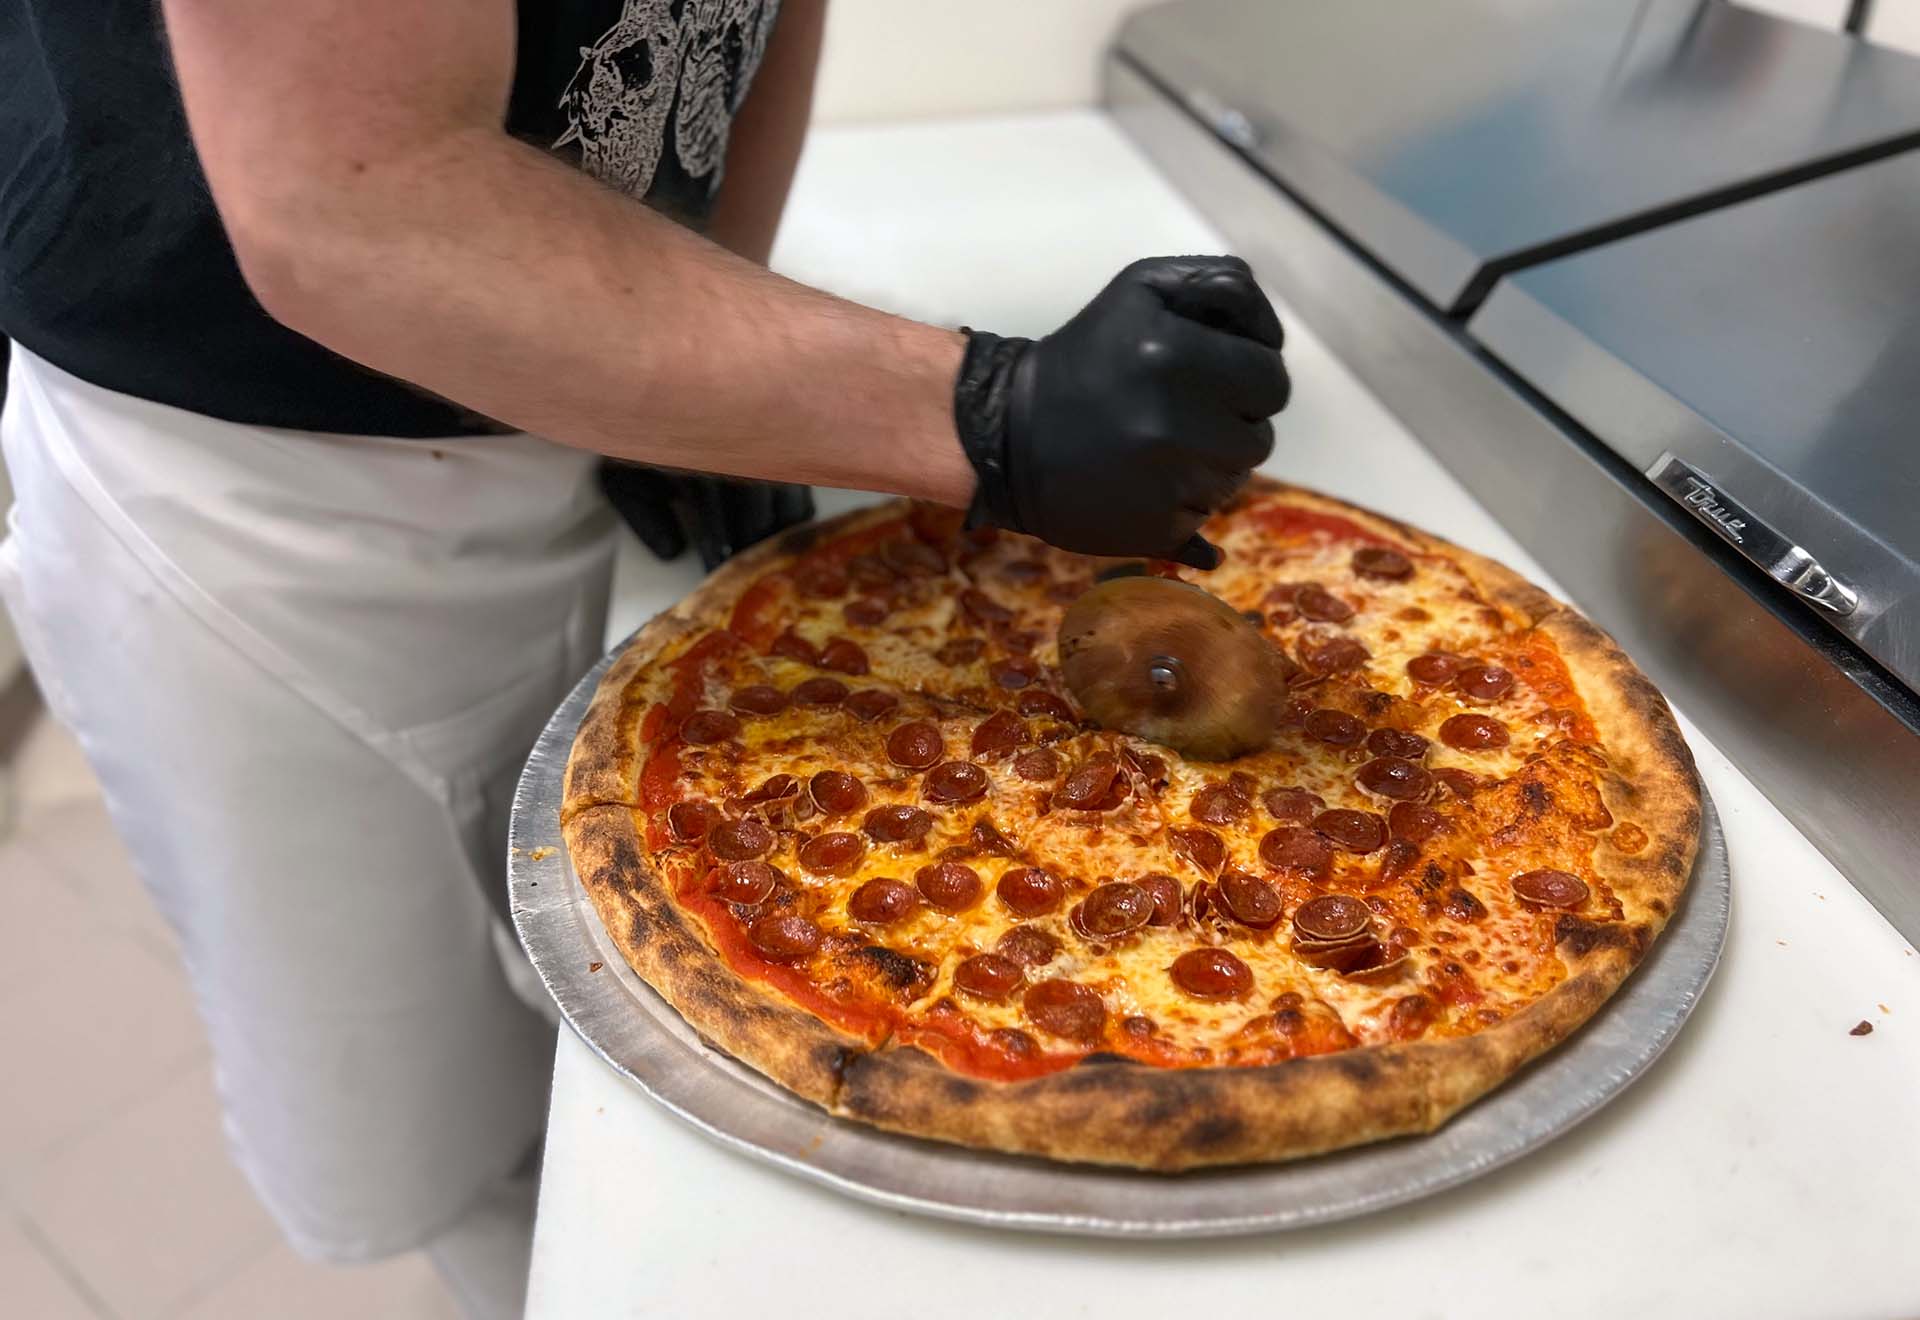 III. Understanding Thick Crust Pizza